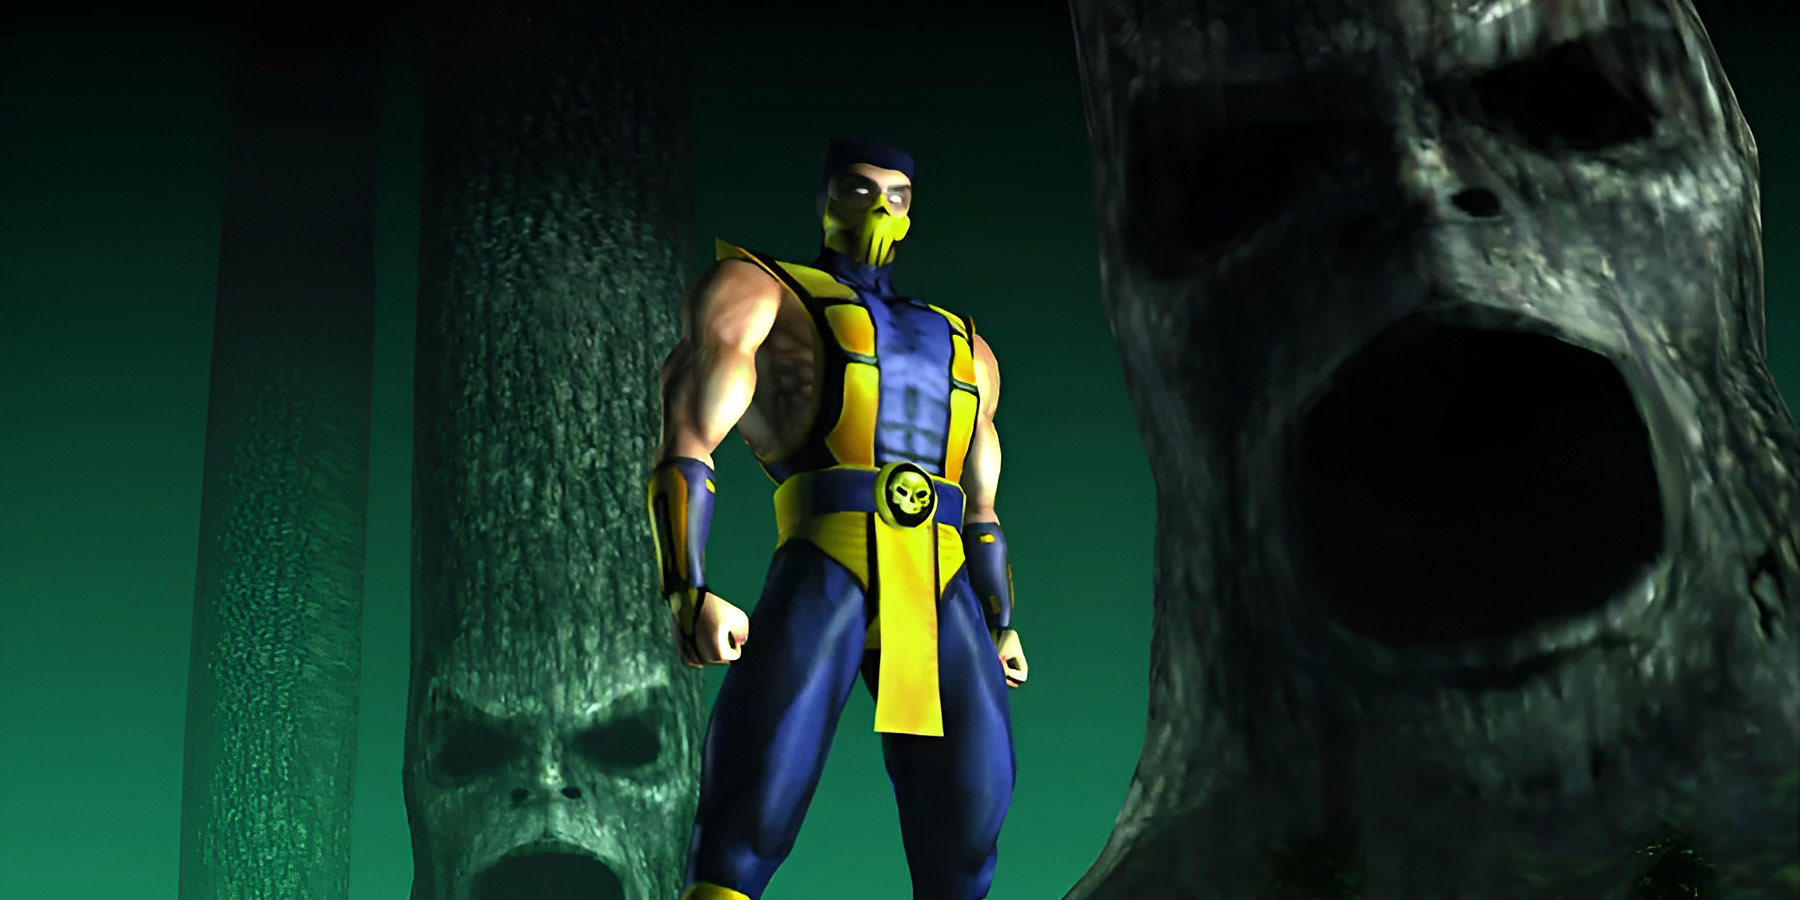 Jarek, Mortal Kombat Wiki